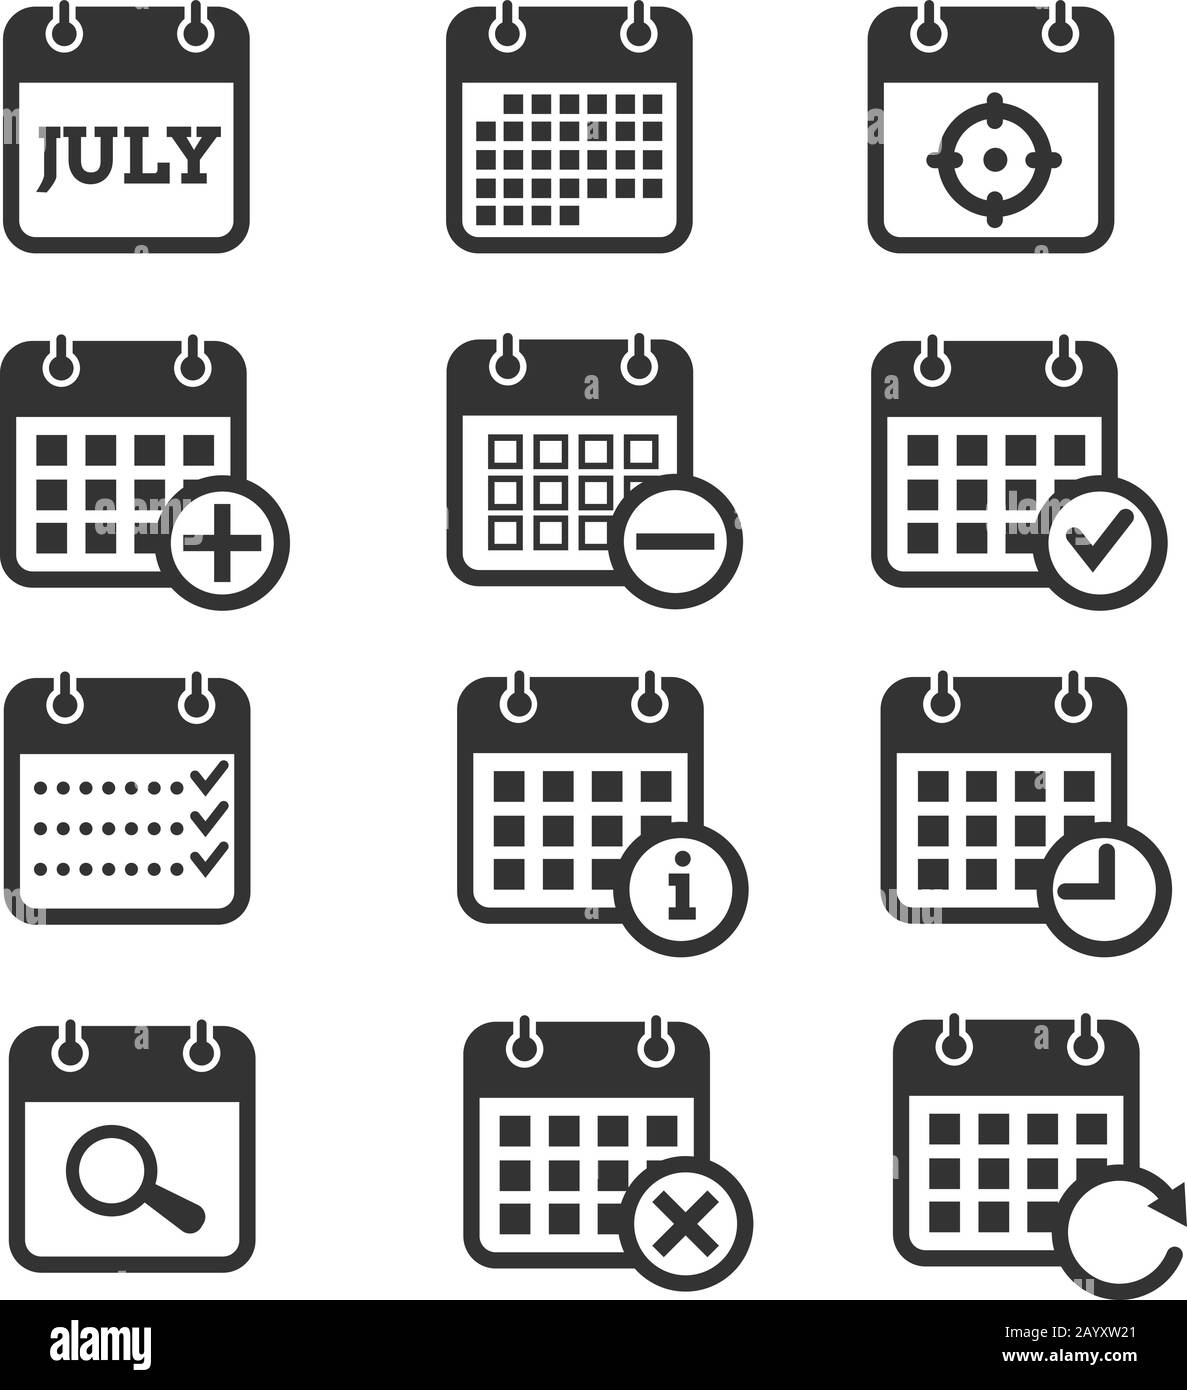 Icônes d'heure, de date et de vecteur de calendrier. Icônes de calendrier pour l'organisateur et l'événement, le rappel et l'agenda Illustration de Vecteur